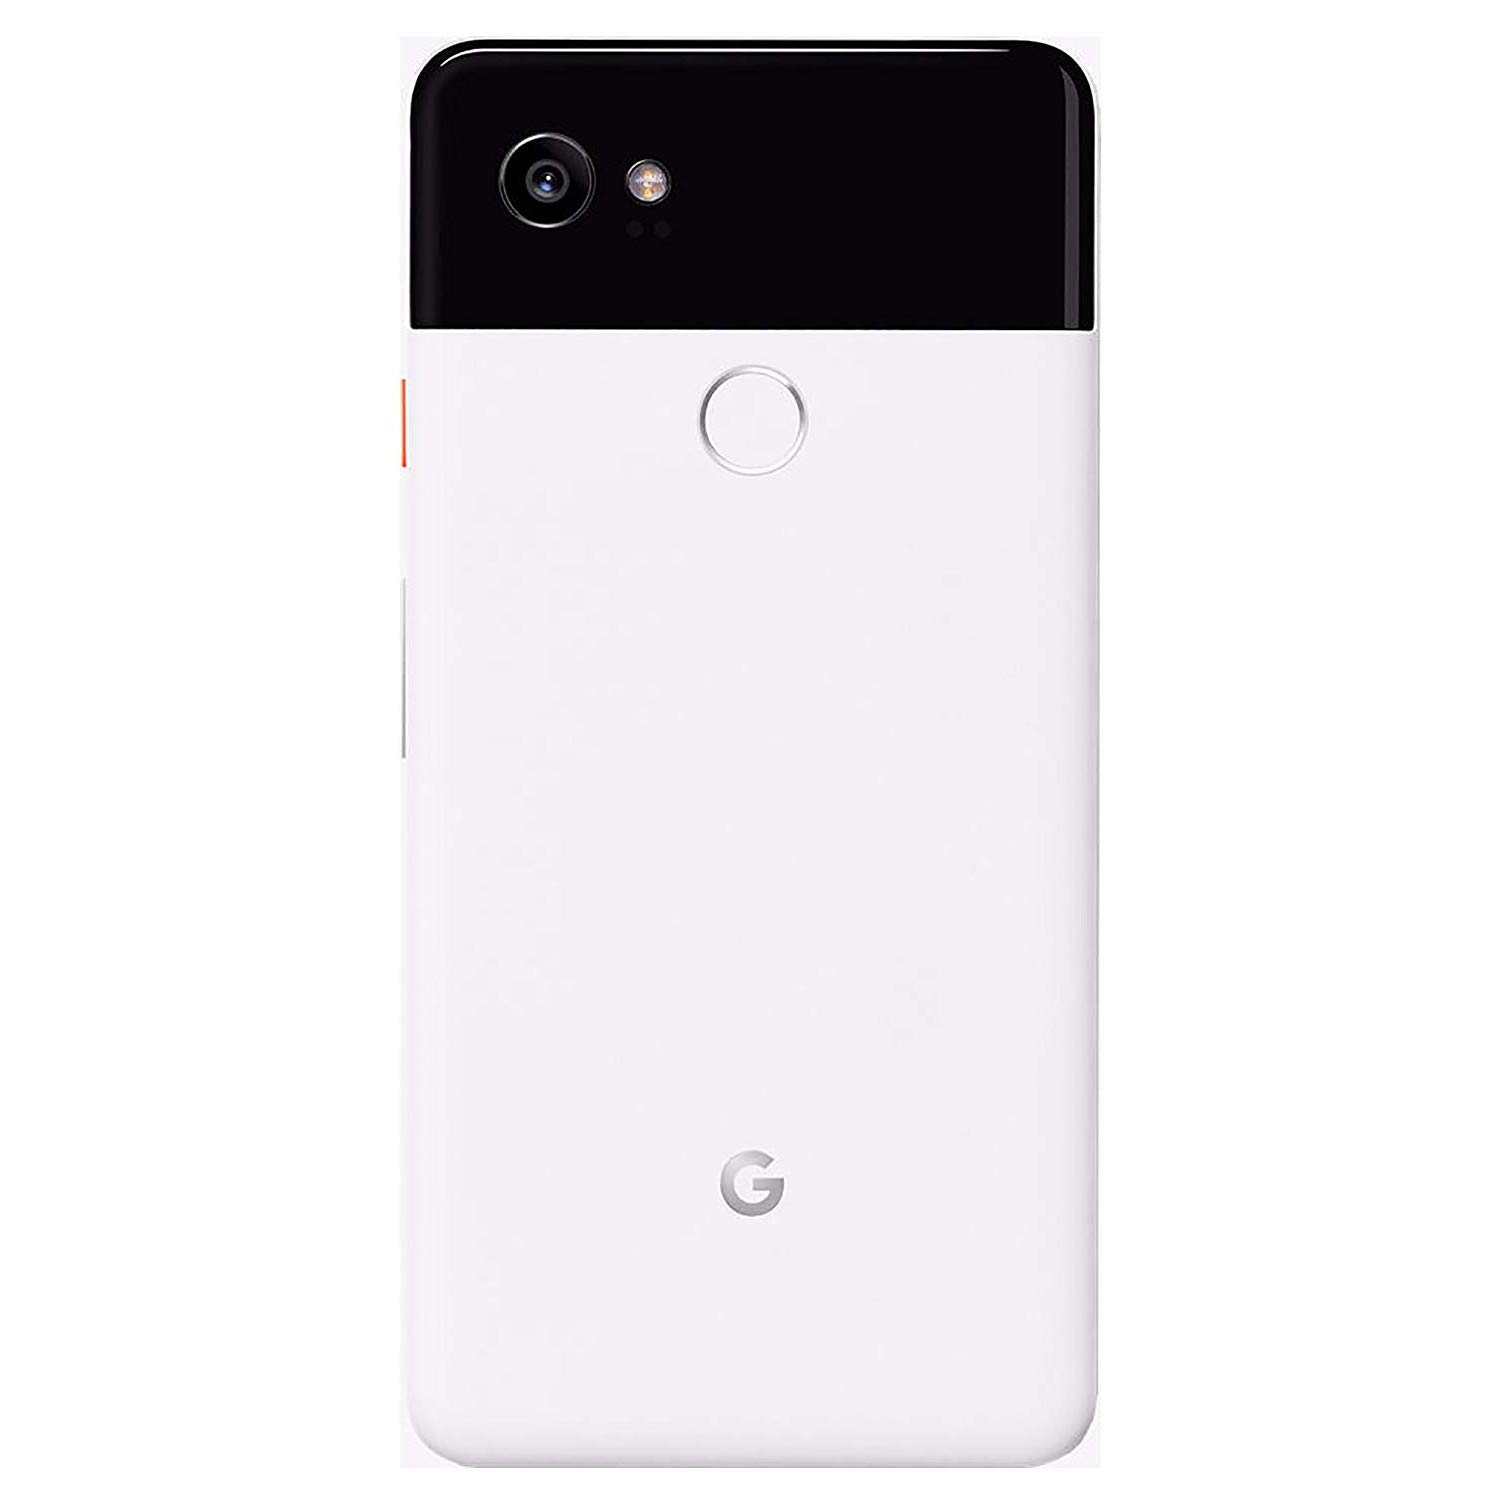 Google Pixel 2 XL 64 GB, White (Renewed)